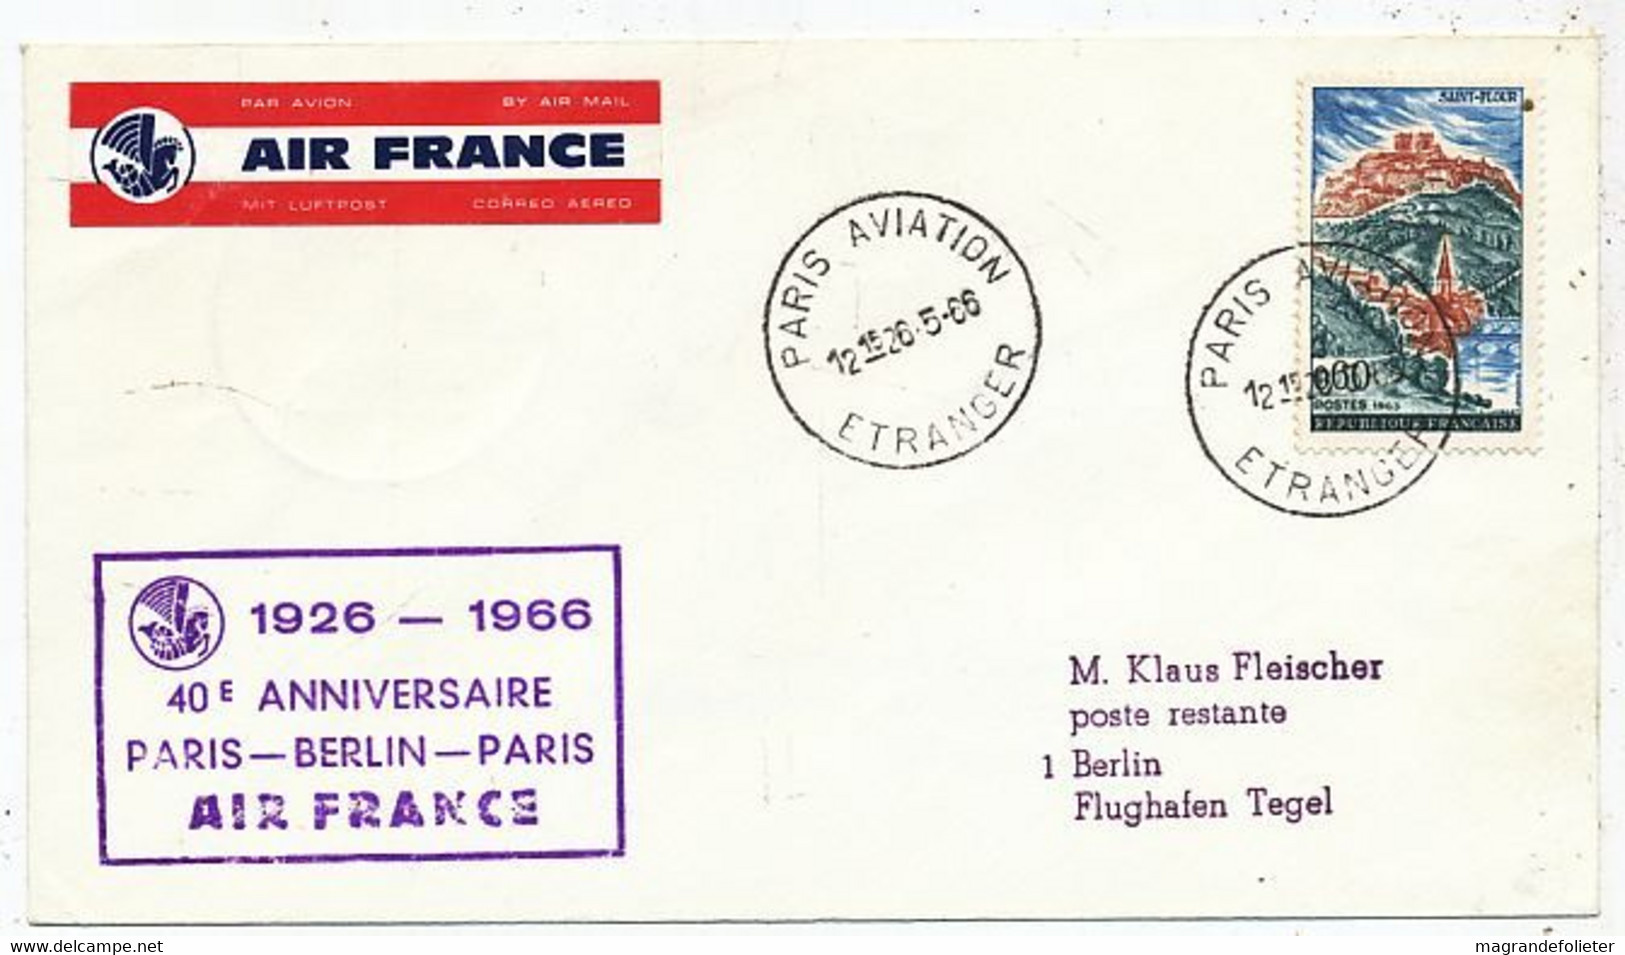 AVION AVIATION AIRLINE AIR FRANCE 1926-1966 40é ANNIVERSAIRE PARIS-BERLIN-PARIS - Flight Certificates